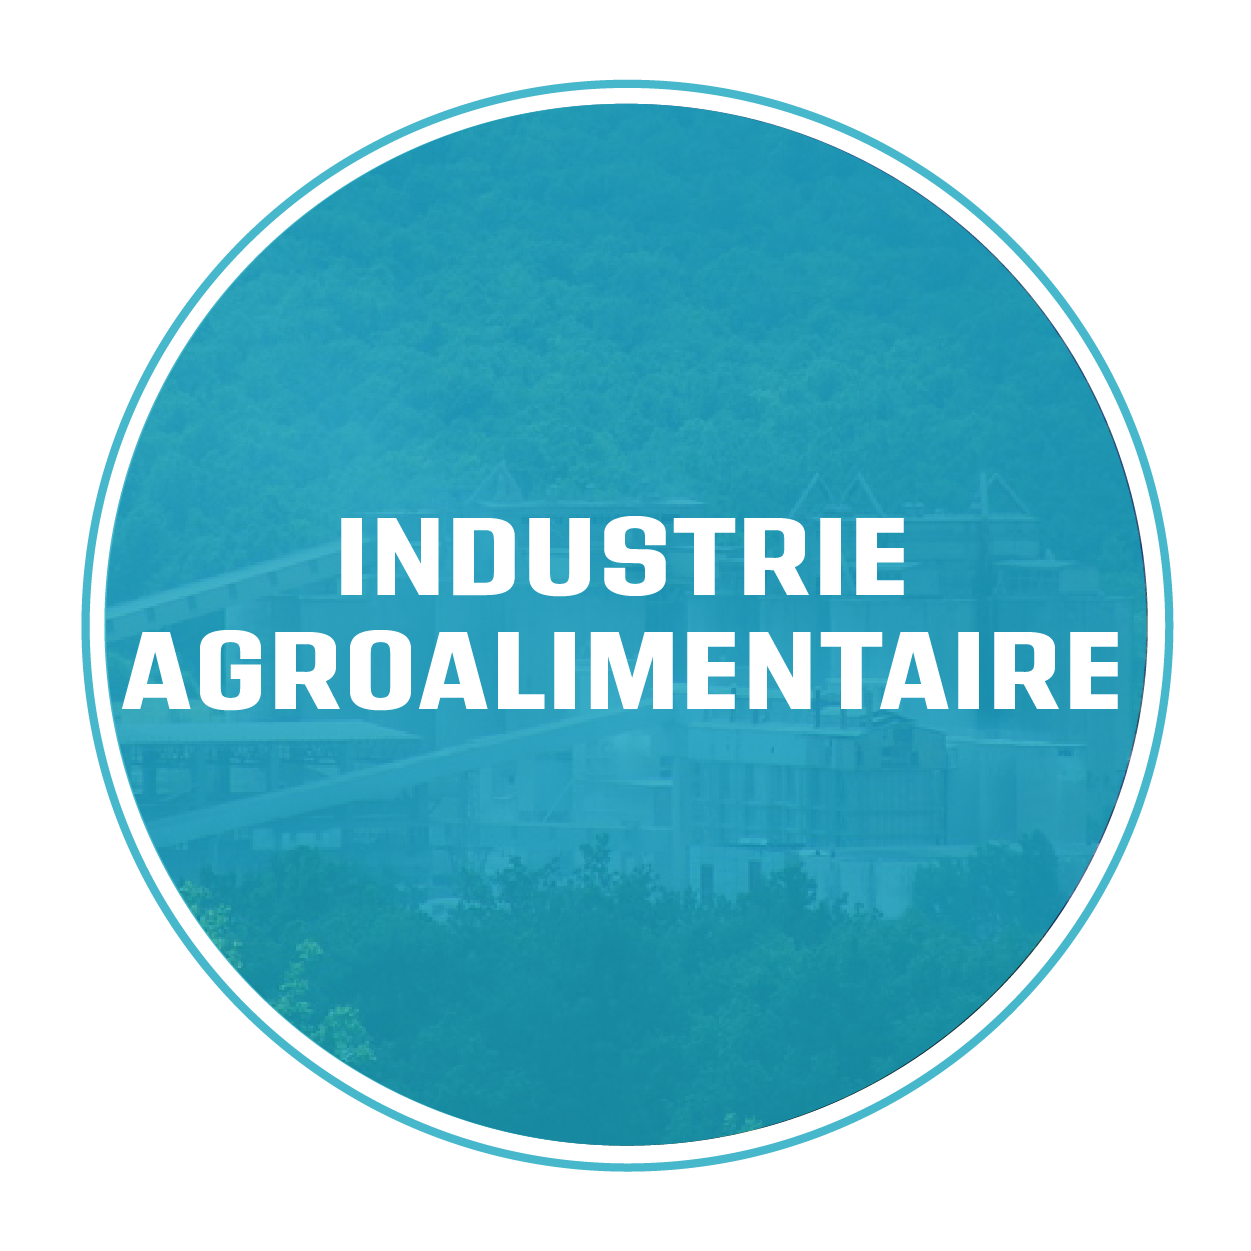 Industrie agroalimentaire/agro-céréalier